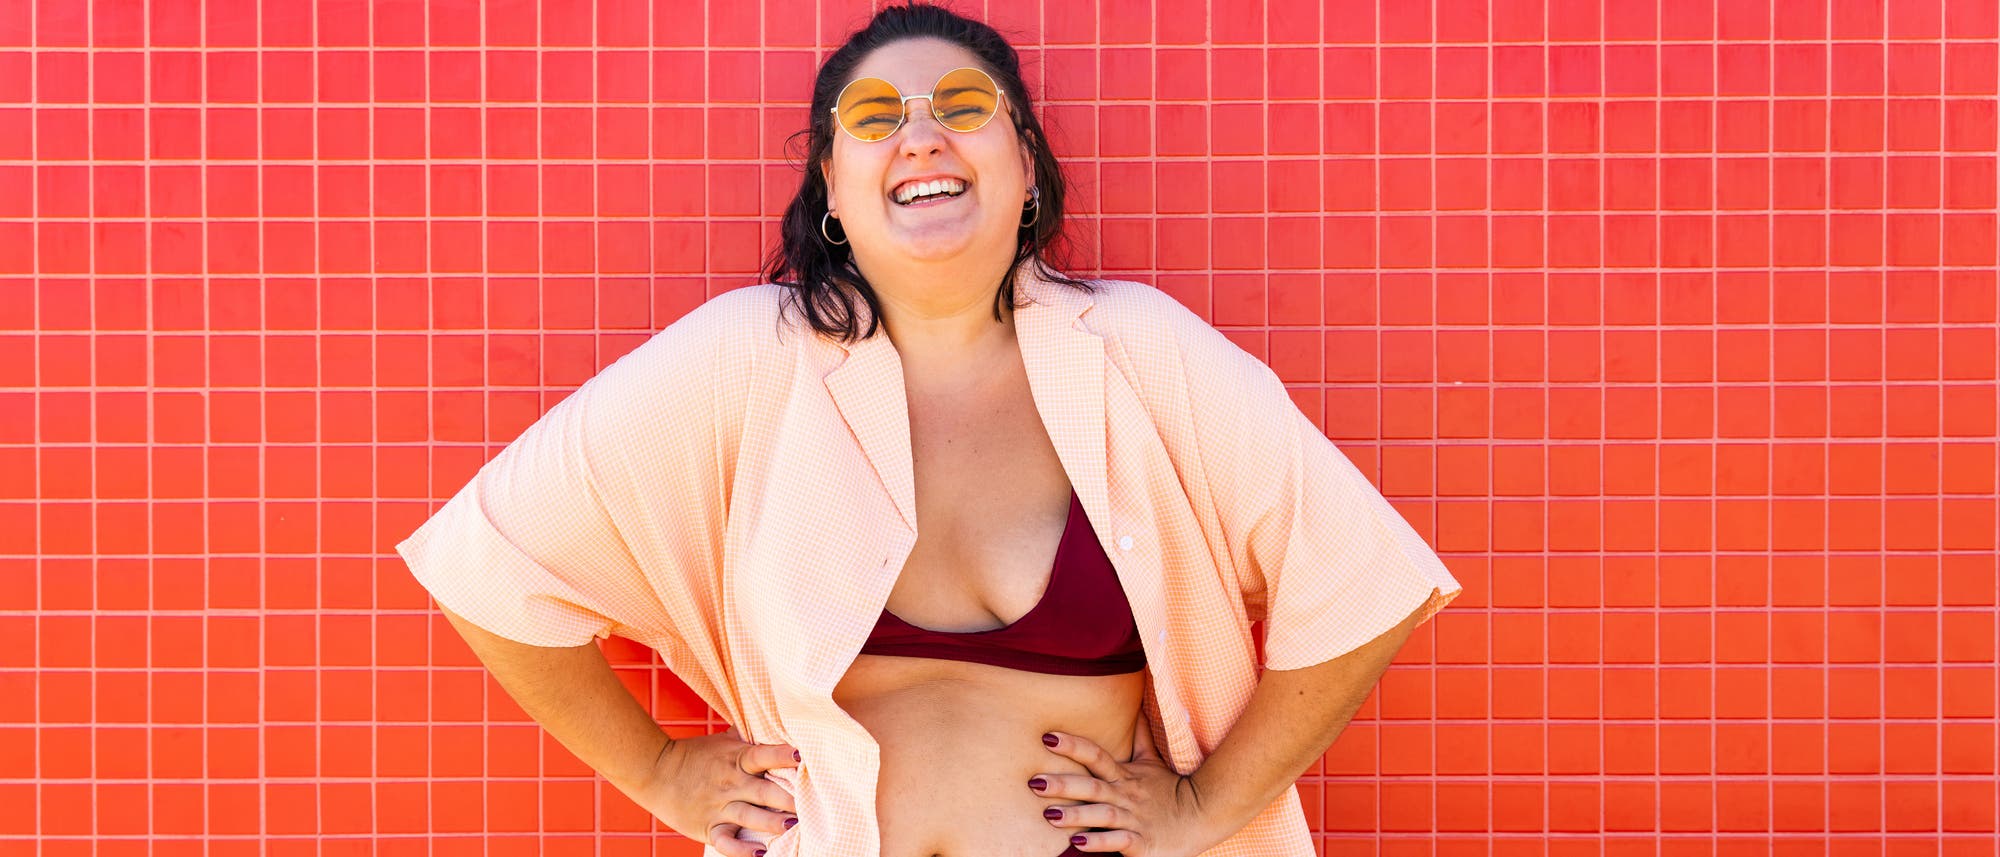 Eine Frau im Bikini steht lachend vor einem roten Hintergrund